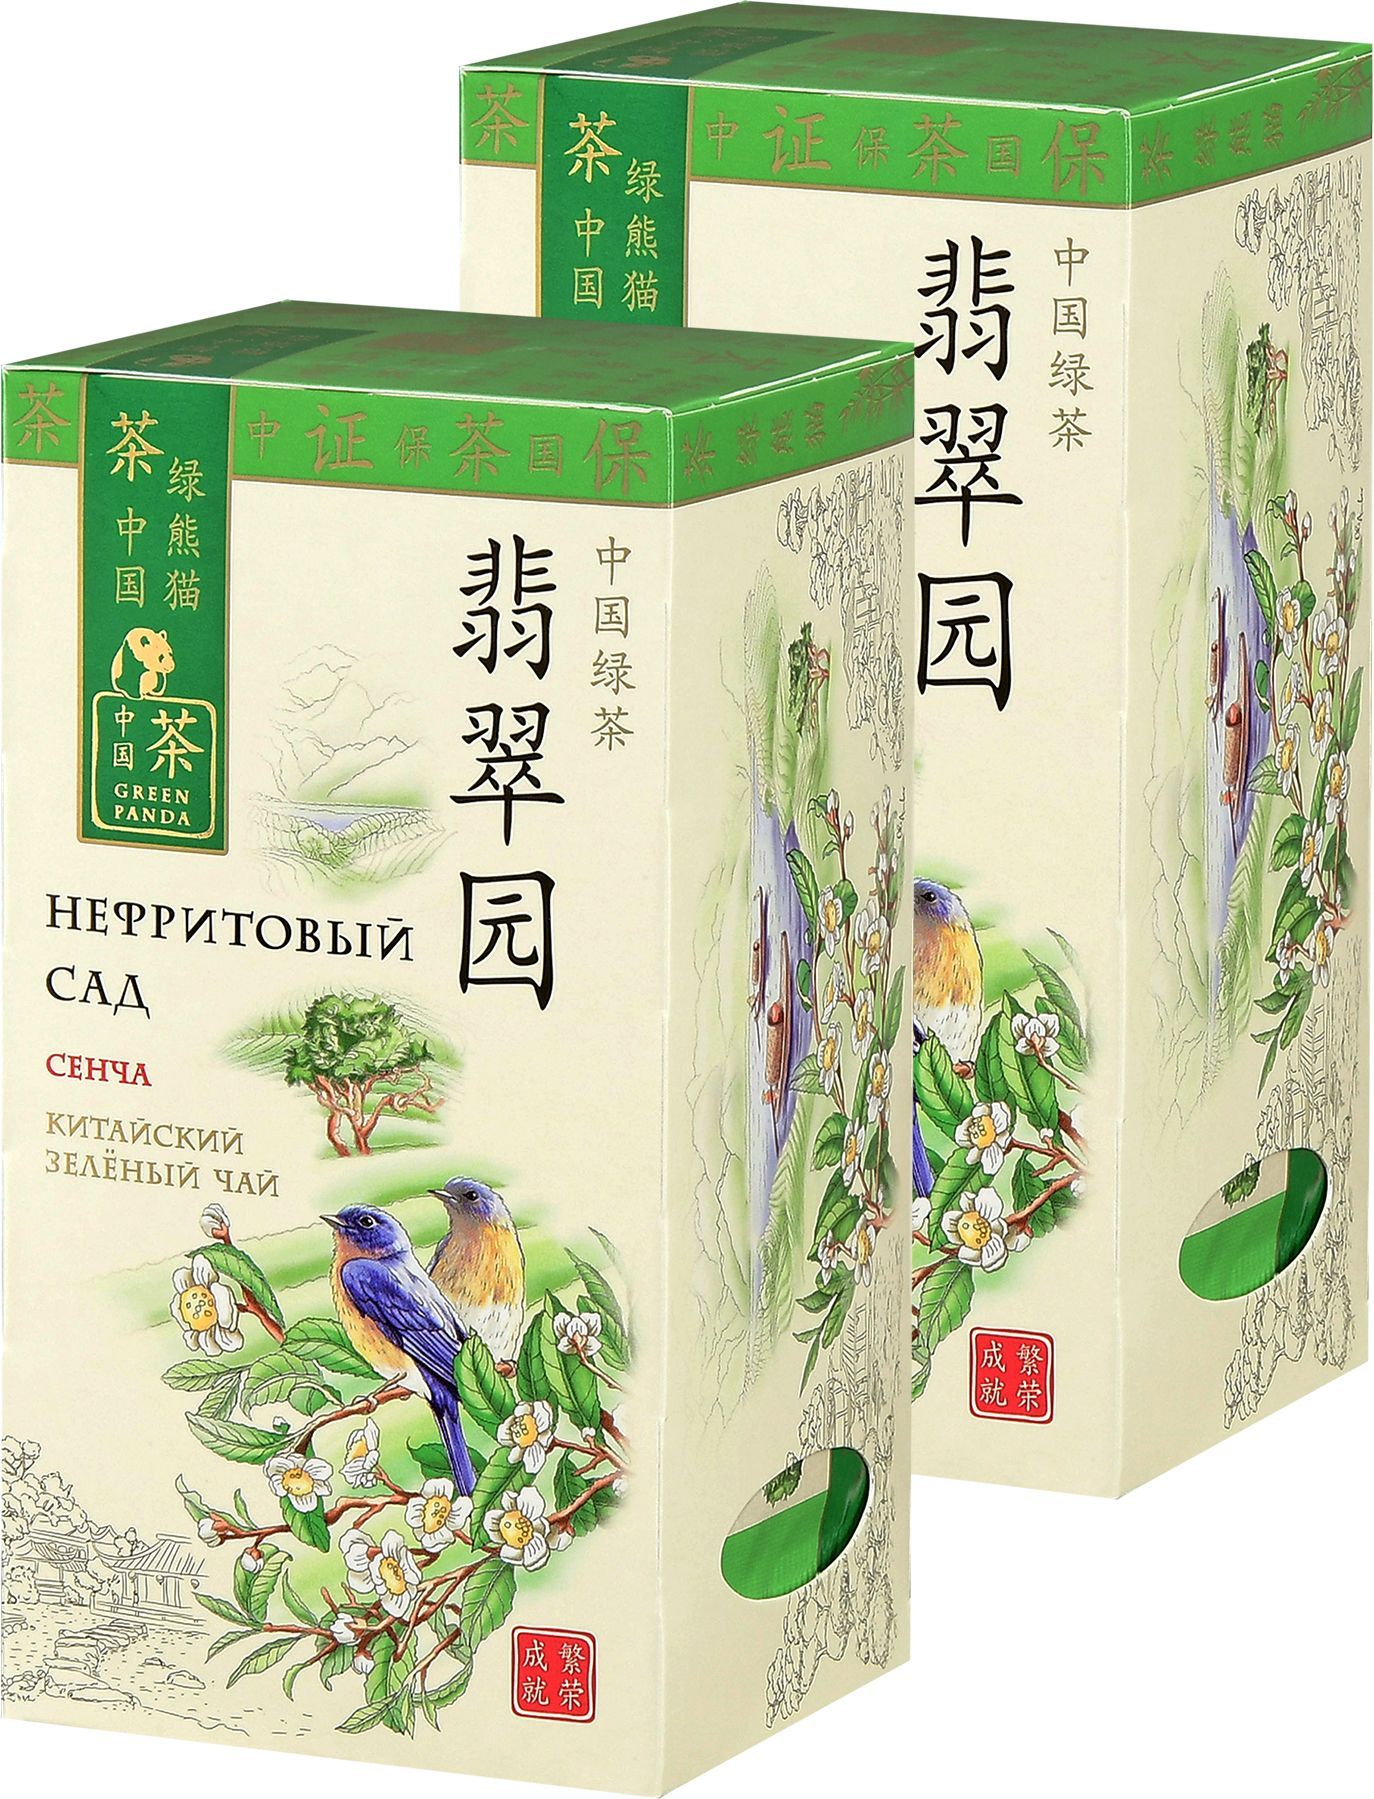 Чай Зеленая Панда Нефритовый сад, 2 пачки по 25 пакетиков *2 г